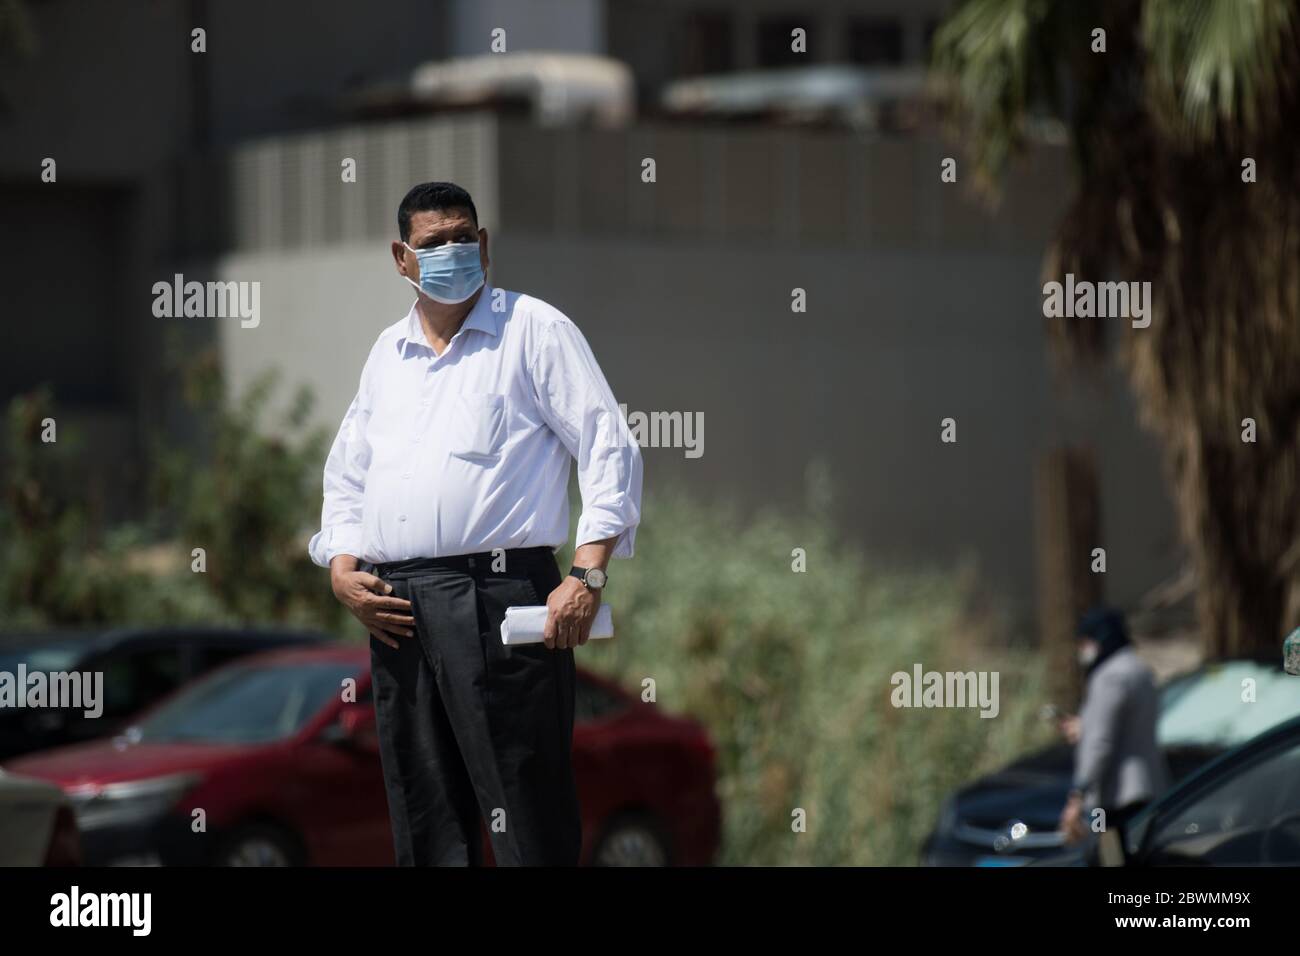 (200602) -- GIZA, 2 juin 2020 (Xinhua) -- UN homme portant un masque facial est vu dans une rue à Giza, en Égypte, le 2 juin 2020. L'Égypte a signalé lundi 1,399 nouveaux cas de COVID-19, portant le nombre total dans le pays à 26,384. (Xinhua/Wu Huiwo) Banque D'Images